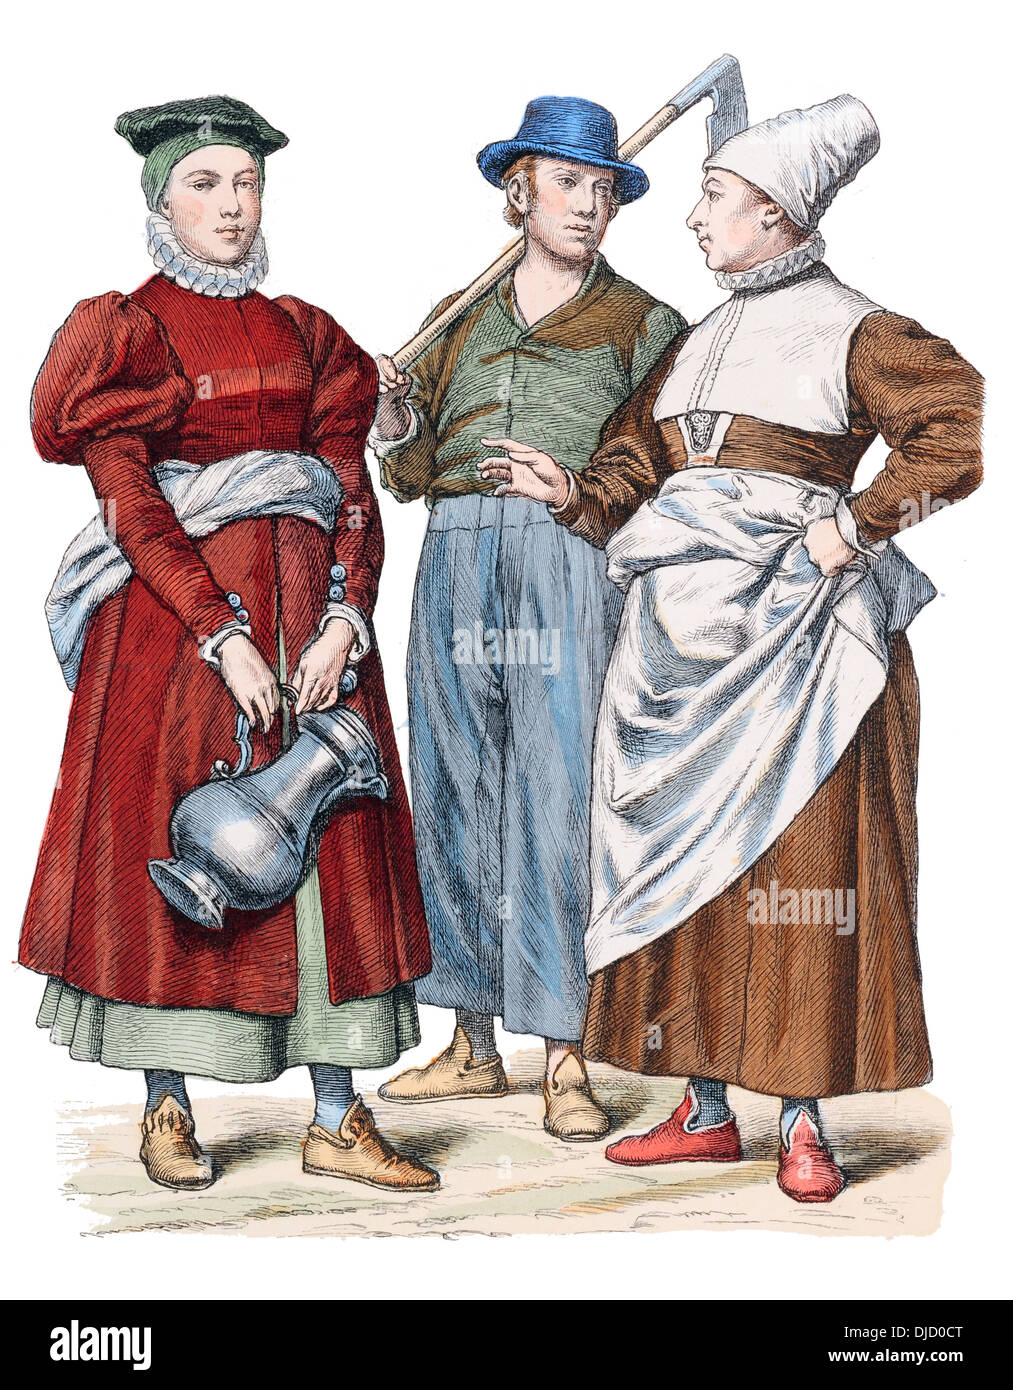 Fin du 16e siècle XVI 1500 Costumes allemand (de gauche à droite) Femme de ockholm et couple de occidentale Banque D'Images